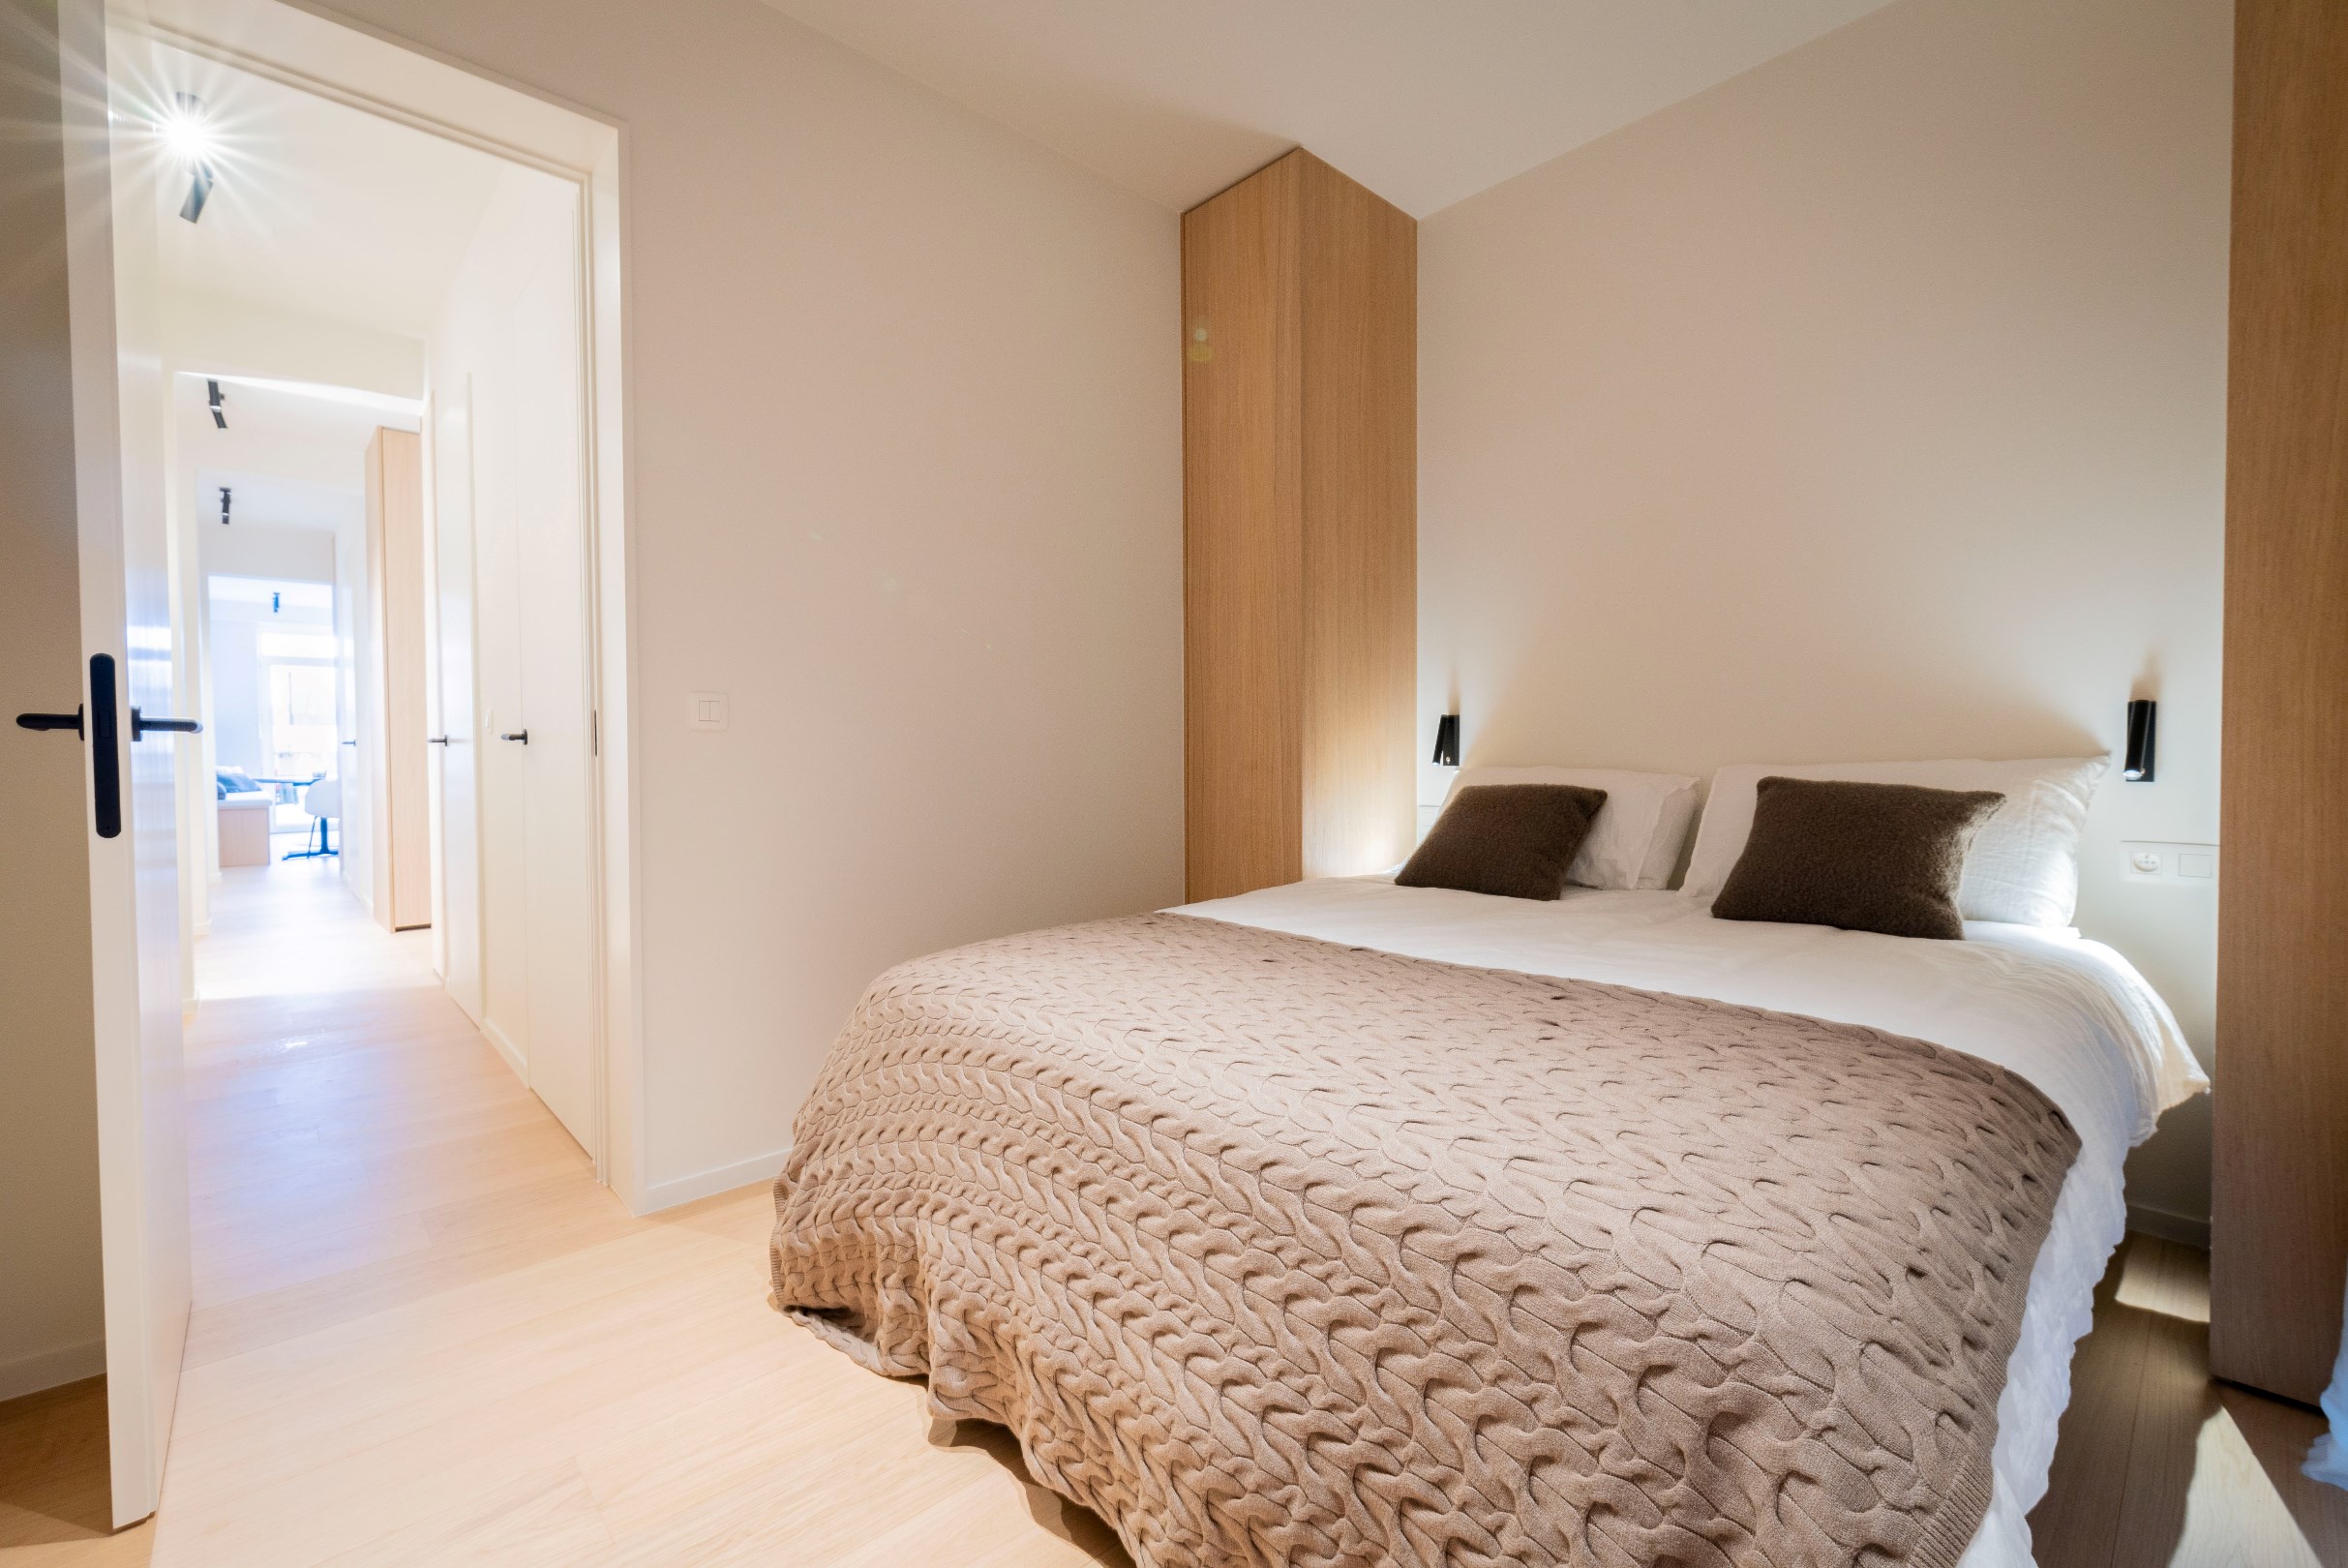 Appartement agr&#233;able avec 2 chambres &#224; coucher et vue ouverte situ&#233; au Koningslaan &#224; Knokke. 